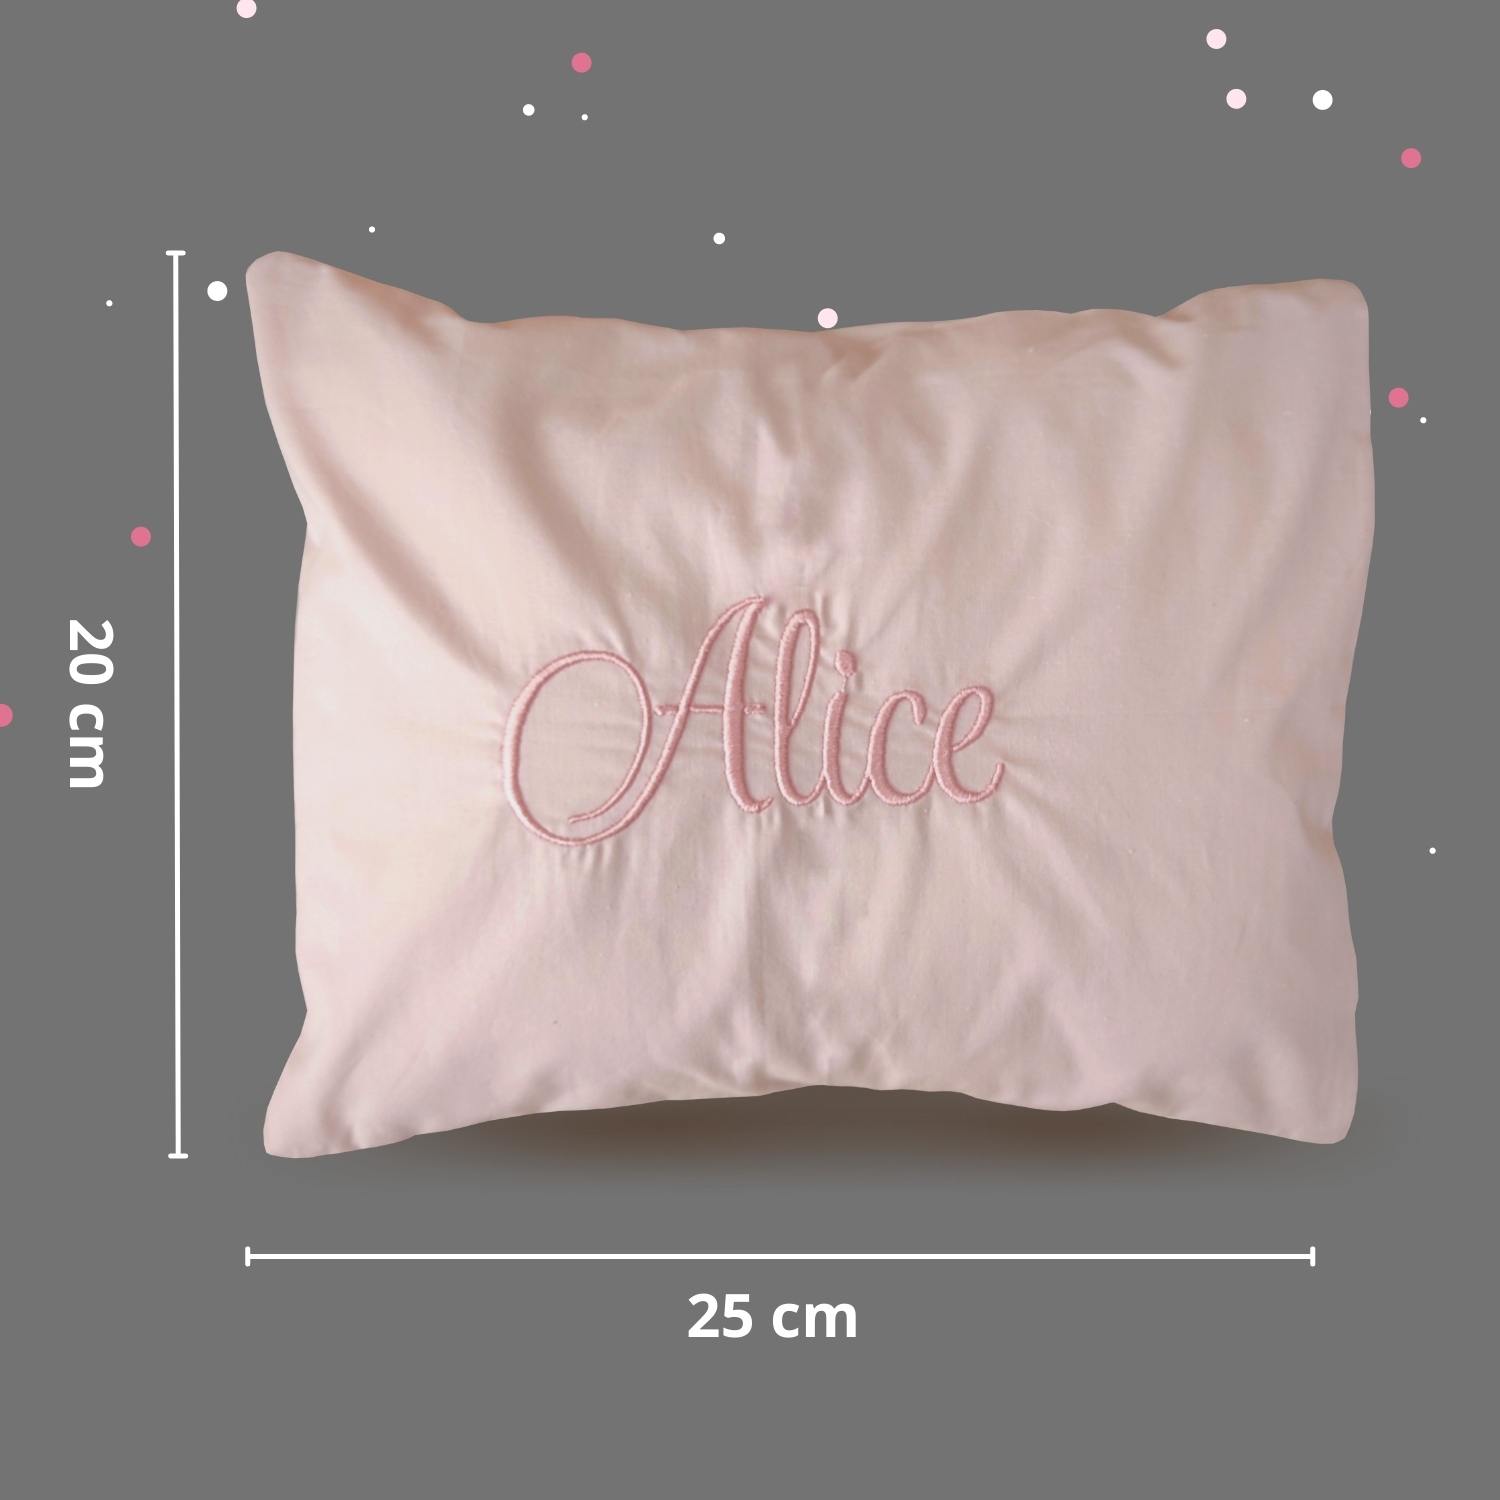 Ninho de bebê redutor de berço com almofada personalizado floral rose com rosa claro